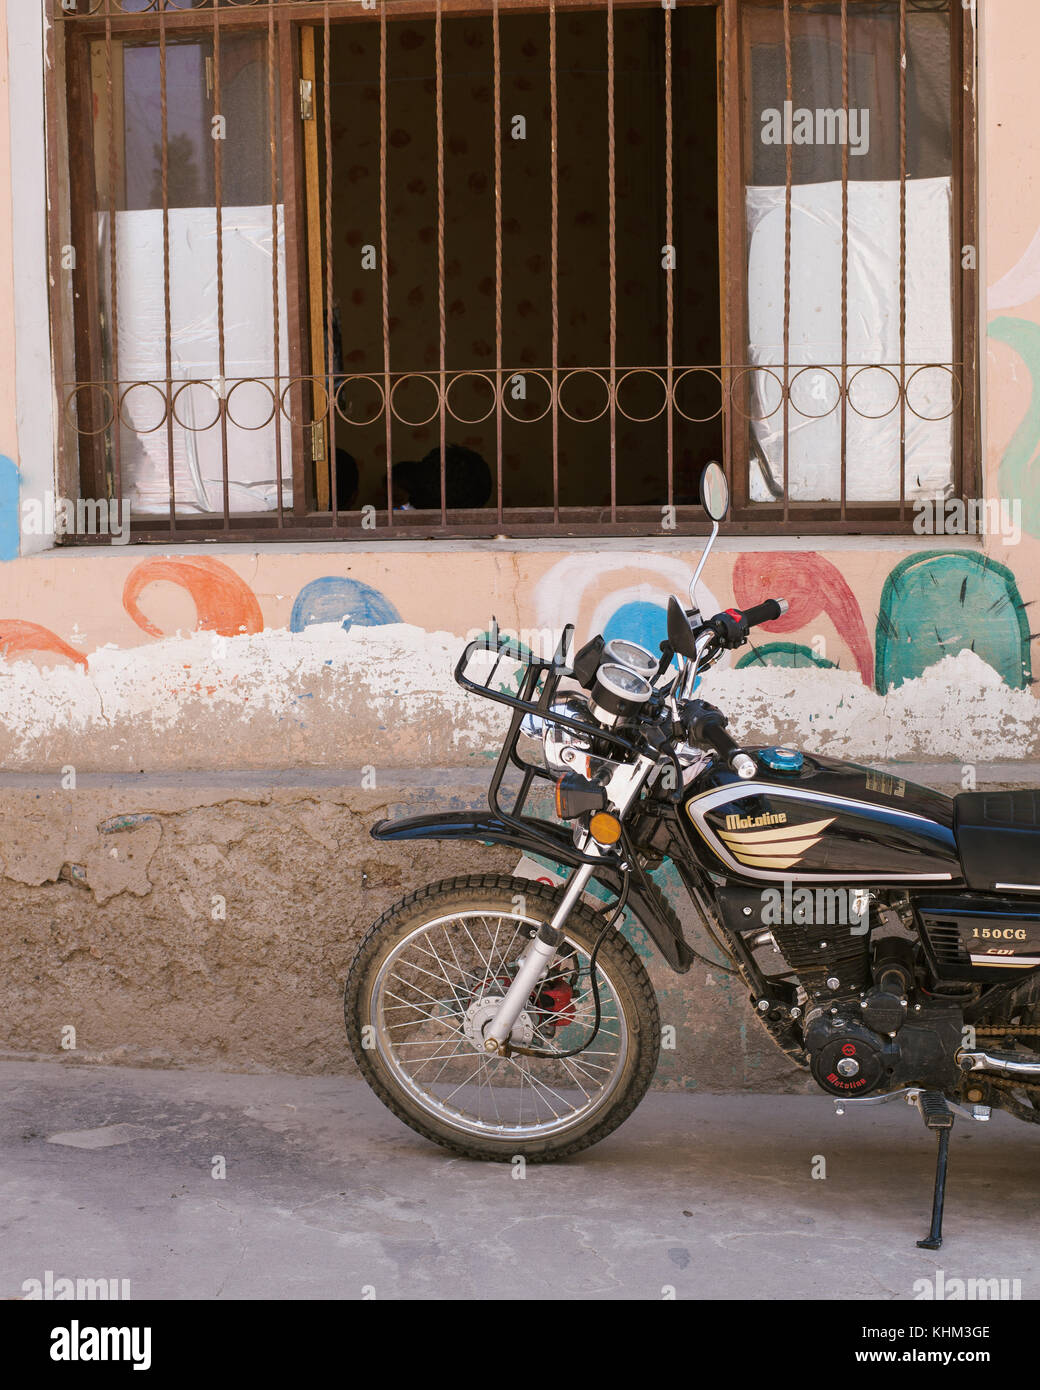 TARATA, COCHABAMBA, BOLIVIA S.A. - OCTOBER 2017: A parked Honda motorcycle along the cobblestone roads of colonial Tarata, Bolivia. Stock Photo